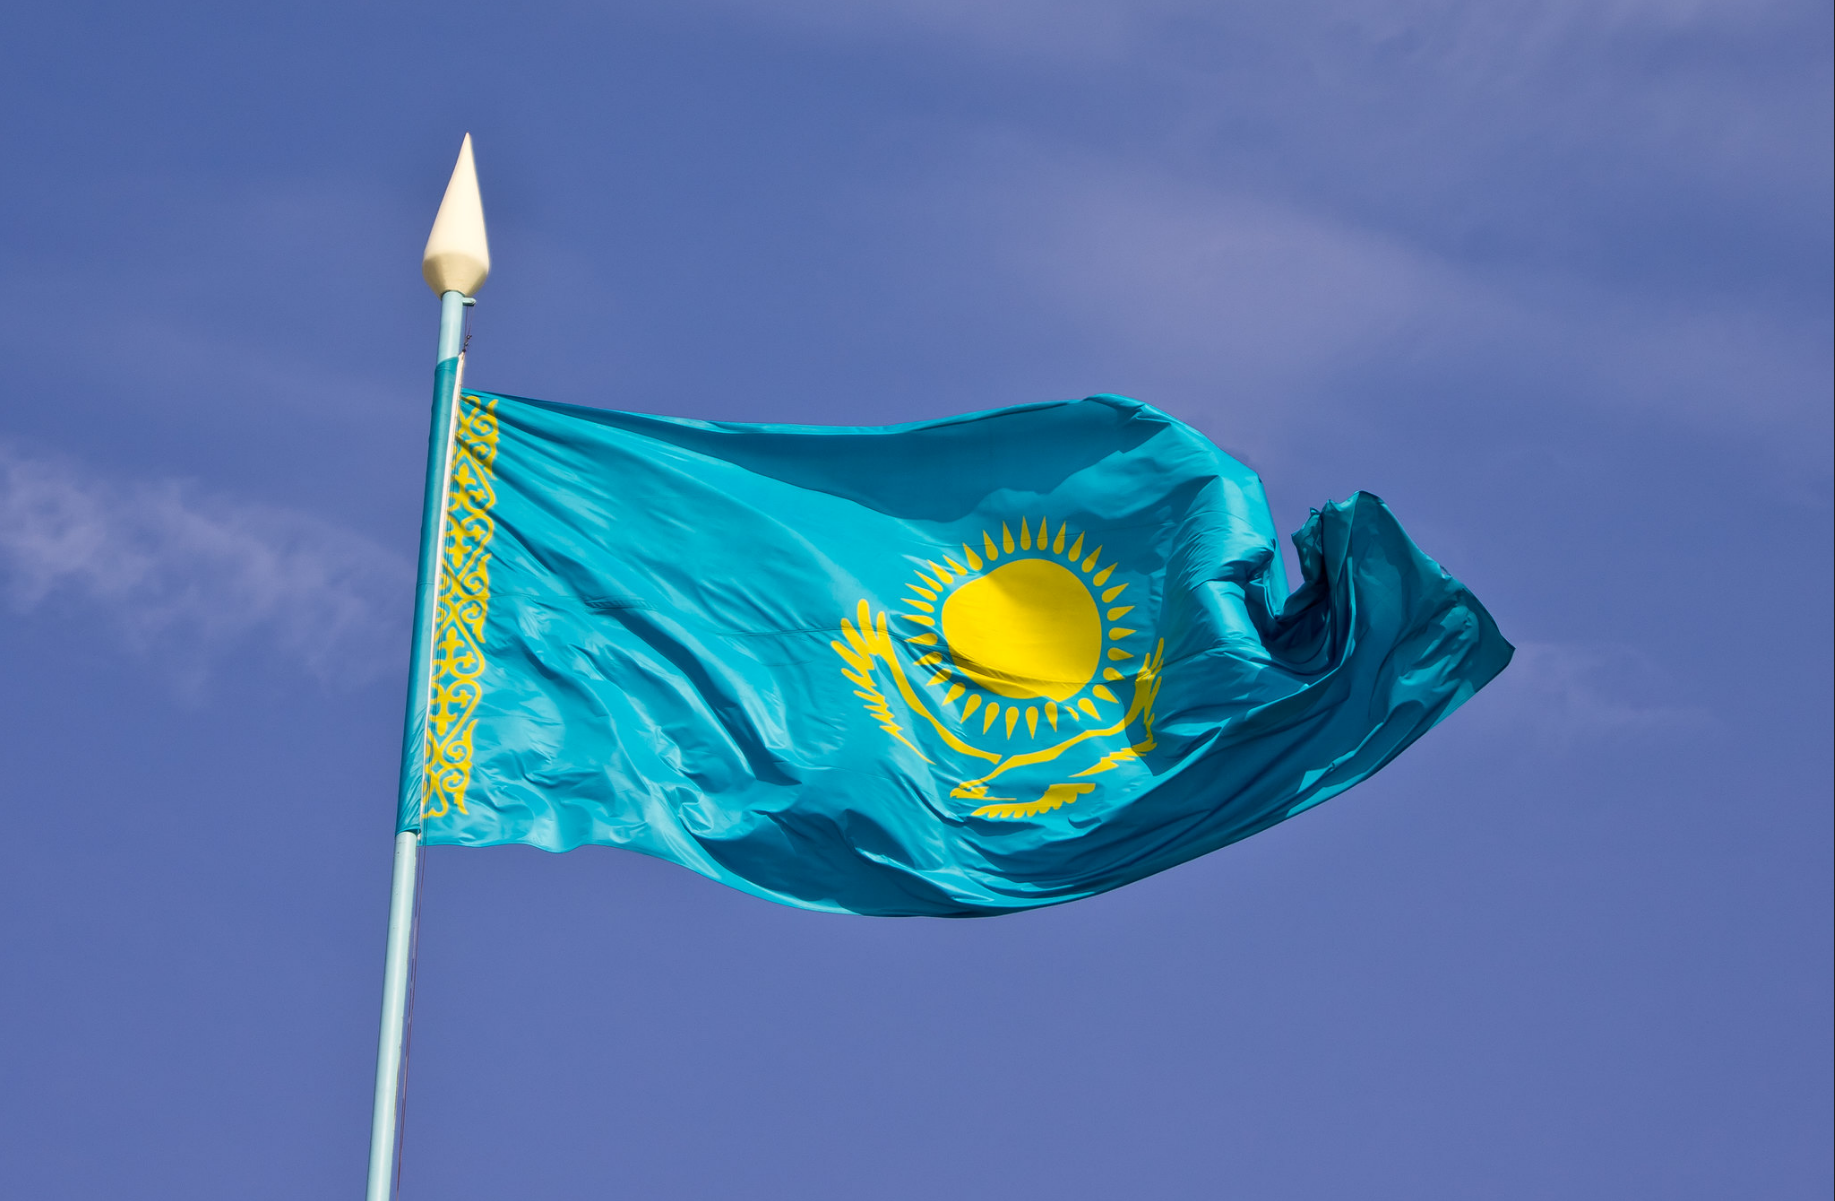 Ղազախստանի բանկերը դանդաղեցրել են ՌԴ-ից փոխանցումների մշակումը. պատժամիջոցների վտանգ կա